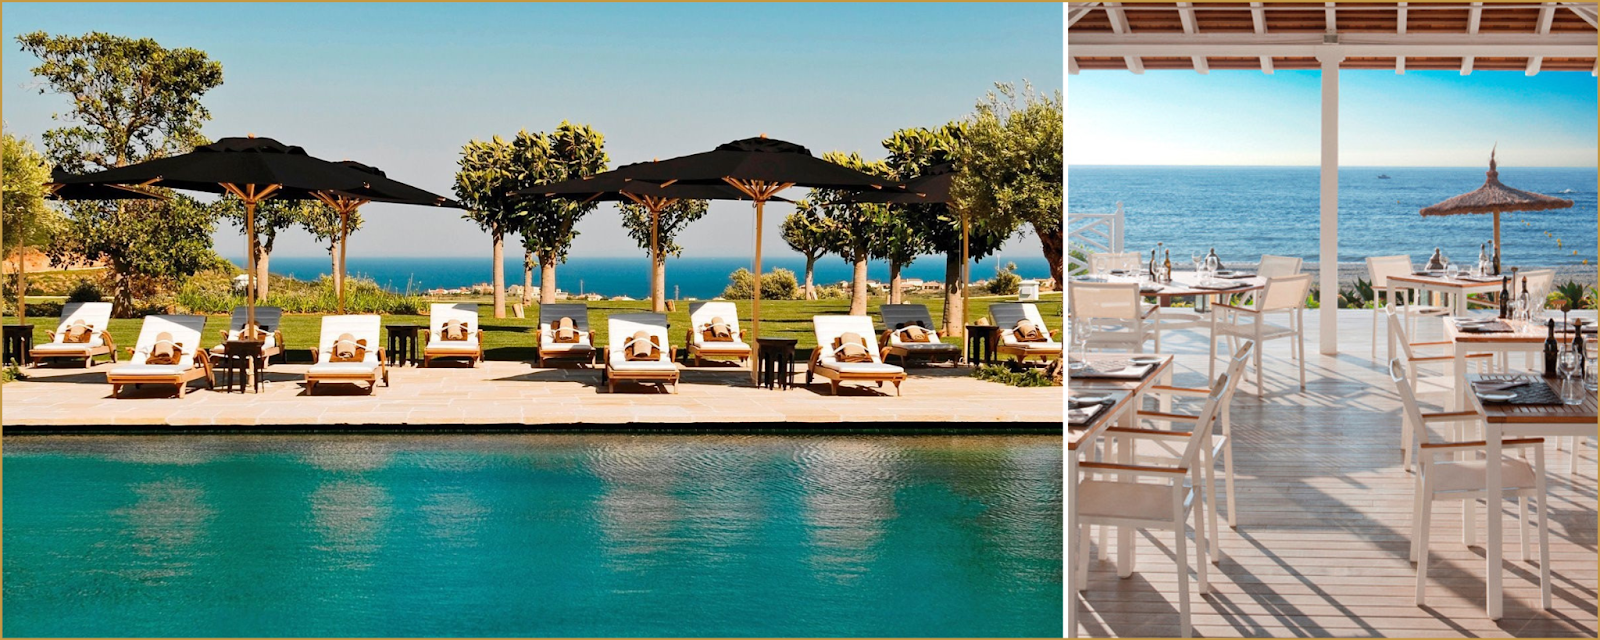 Finca Cortesin Resort Beach Club Hansson Hertzell real estate in Casares Costa del Sol